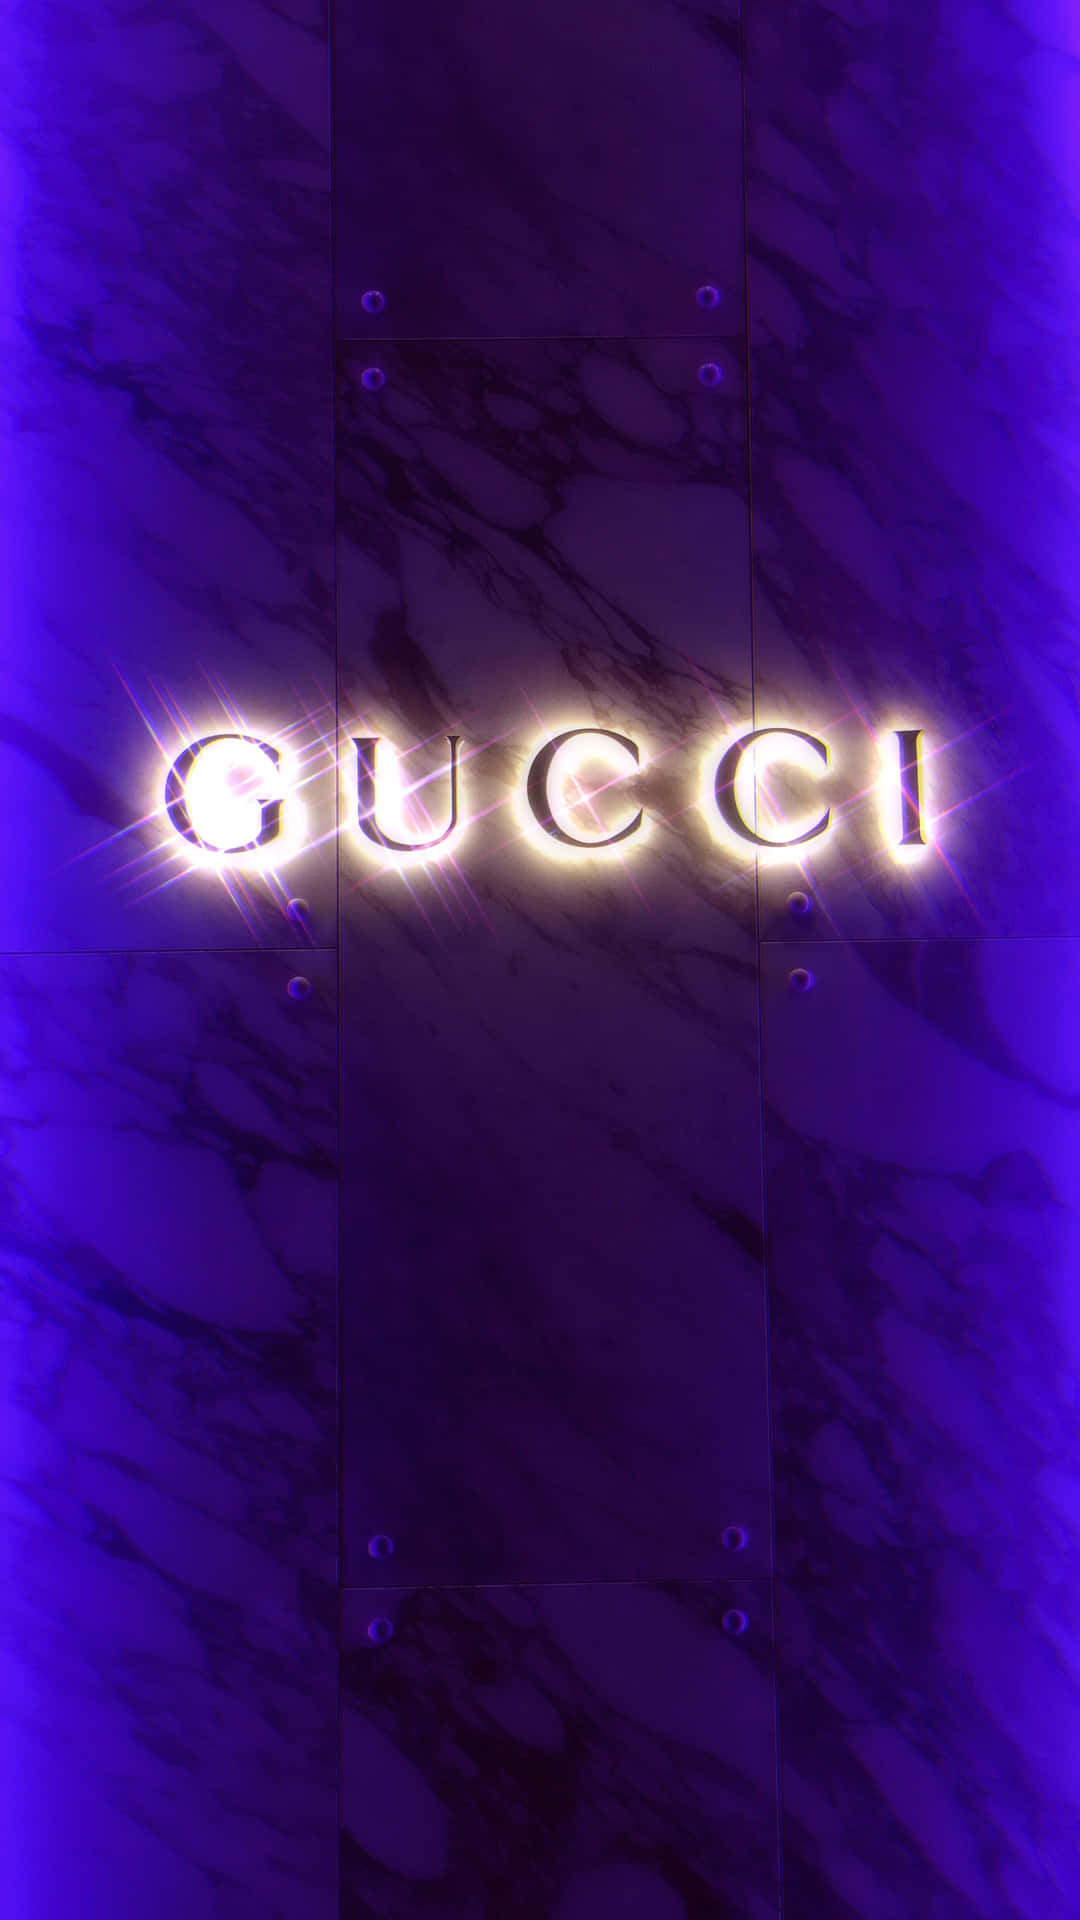 Lilla Gucci 2160 X 3840 Wallpaper